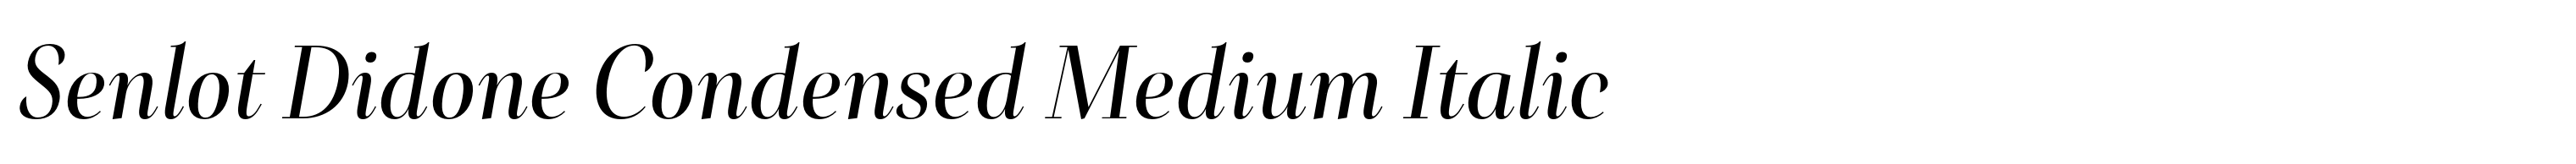 Senlot Didone Condensed Medium Italic